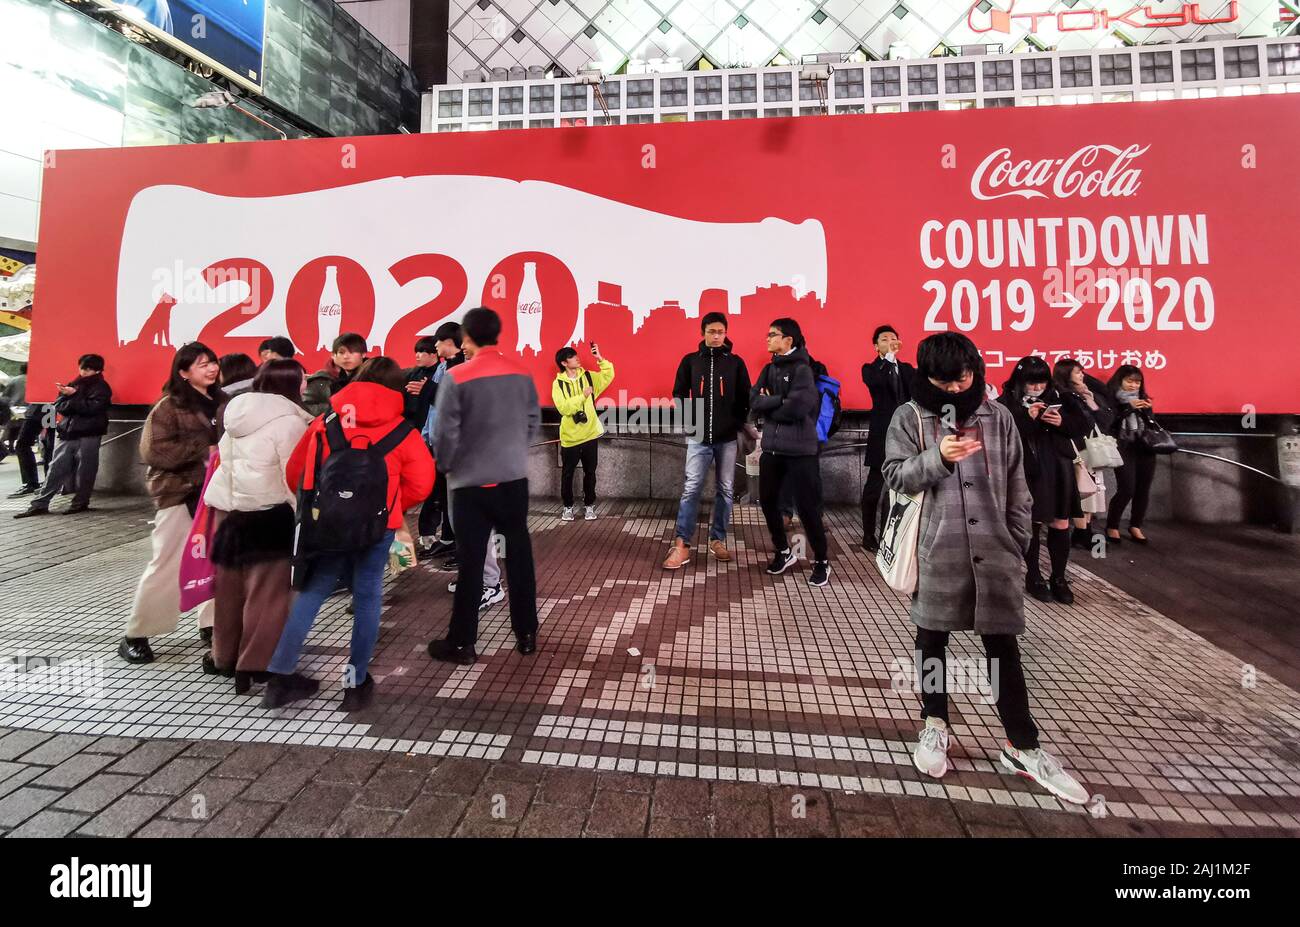 Visto en Tokio en diciembre de 2019 Foto de stock